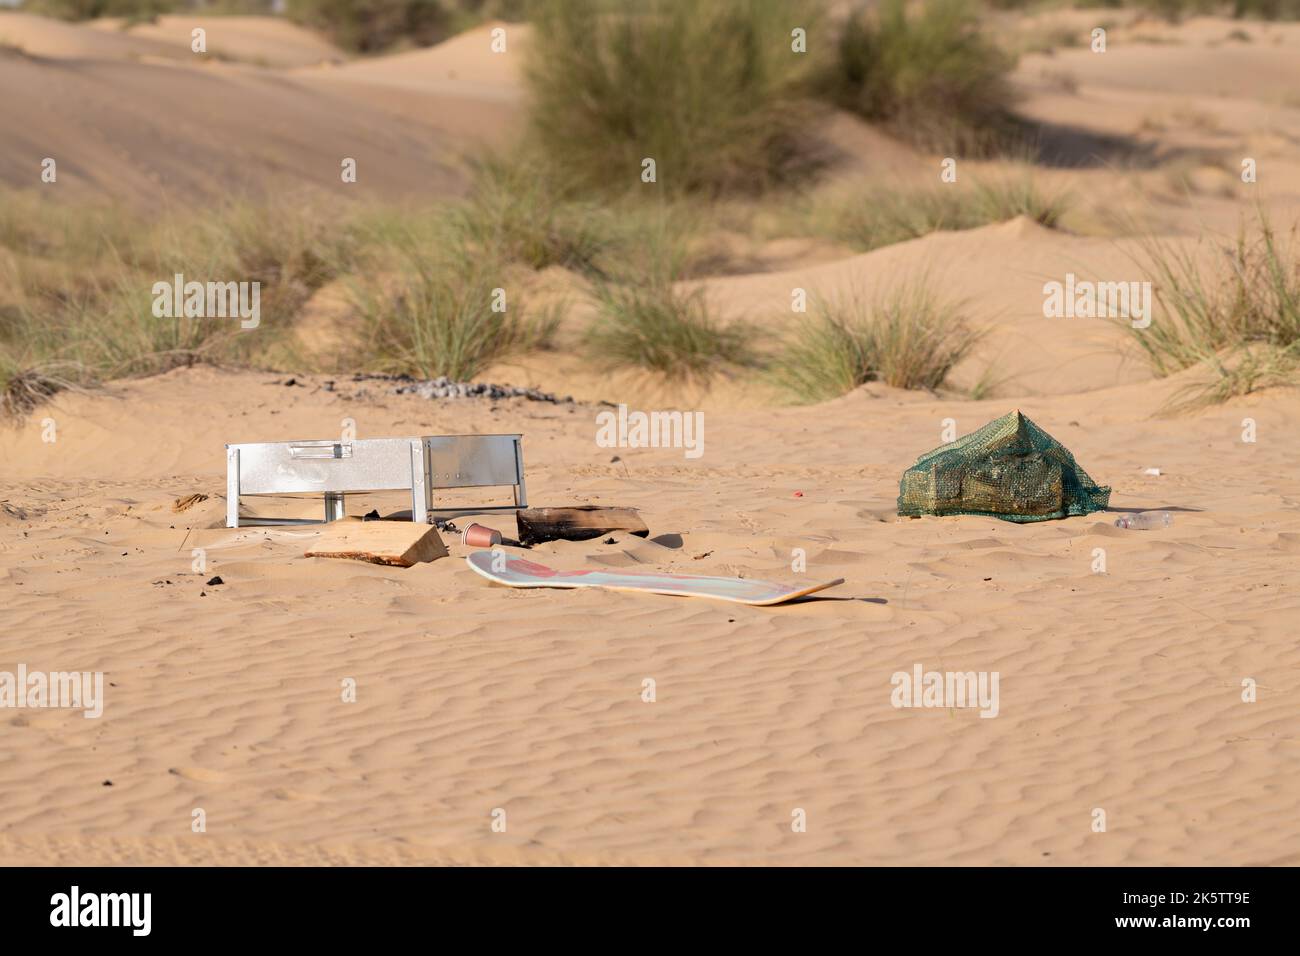 Metallo, plastica e altri rifiuti e rifiuti lasciati da esseri umani inquinando l'ambiente desertico a Dubai, Emirati Arabi Uniti. Foto Stock